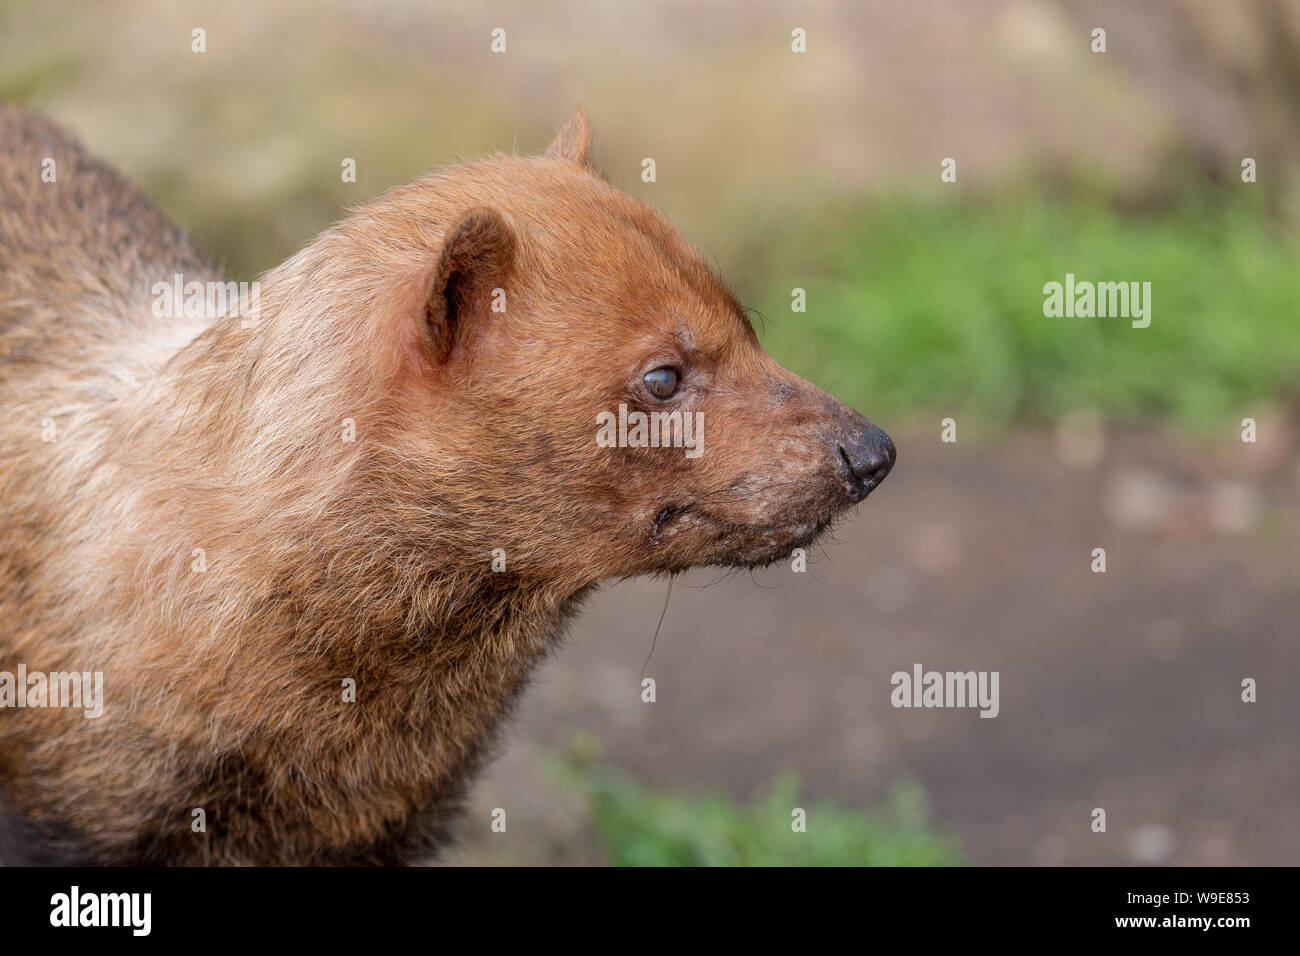 Speothos venaticus Bush Hund solitären canid carnivore Körper Kopf Ausdruck Stockfoto